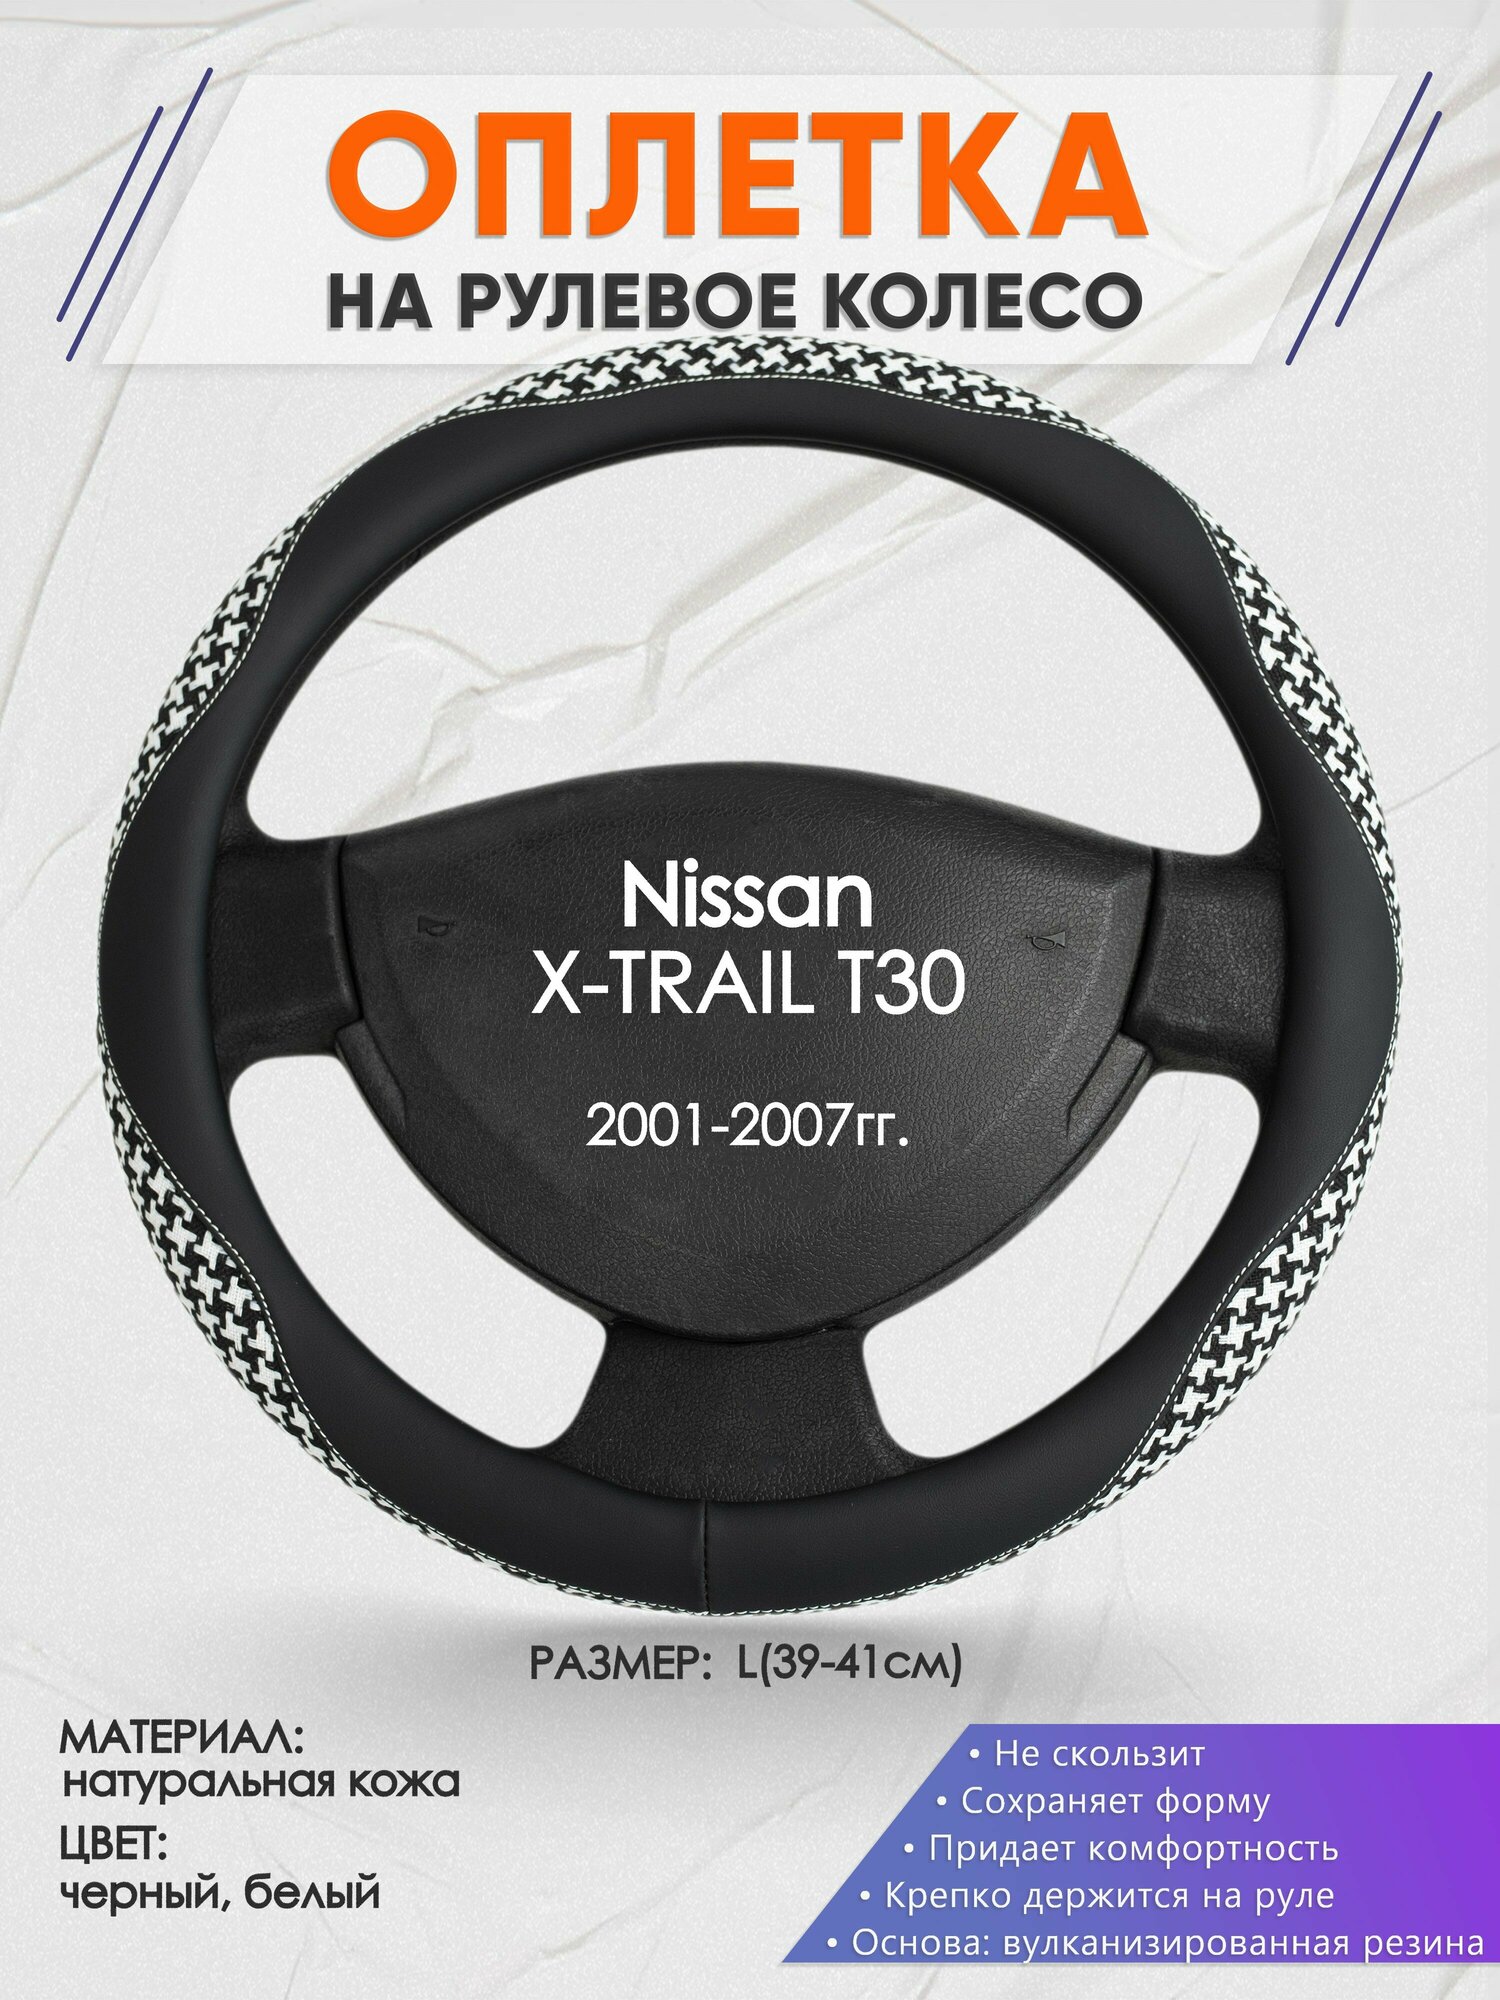 Оплетка на руль для Nissan X-TRAIL T30(Ниссан Икс Трейл) 2001-2007, L(39-41см), Натуральная кожа 21